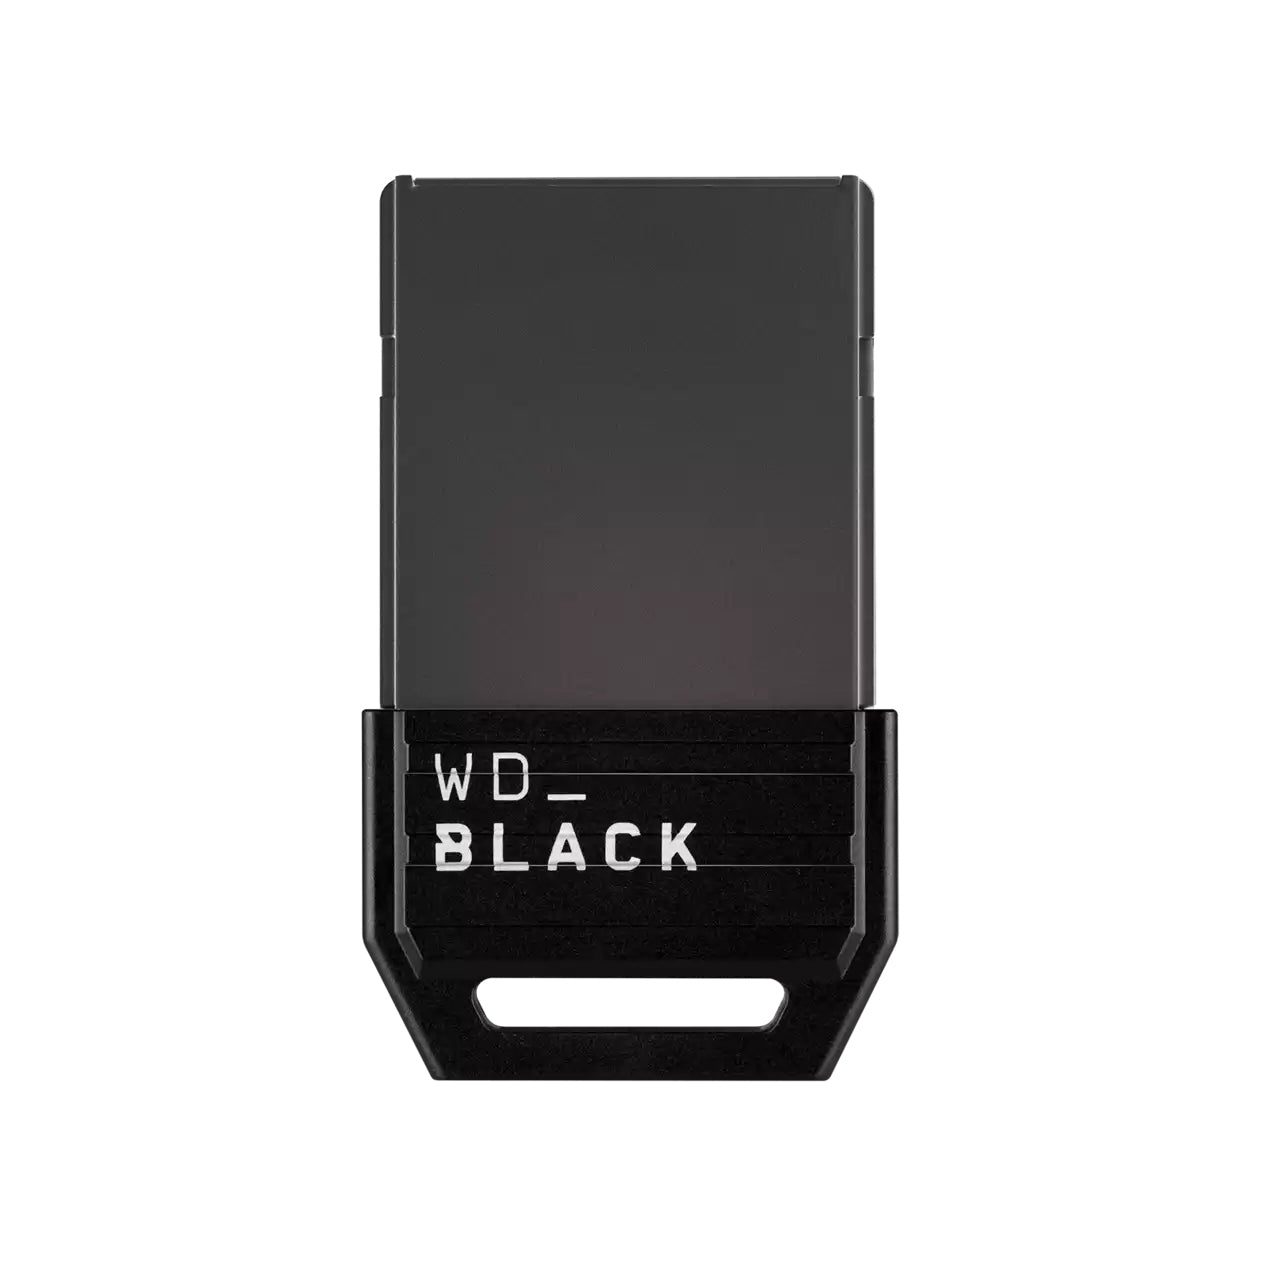 Ssd Western Digital Wdbmph0010Bnc-Wcsn Black C50 Xbox